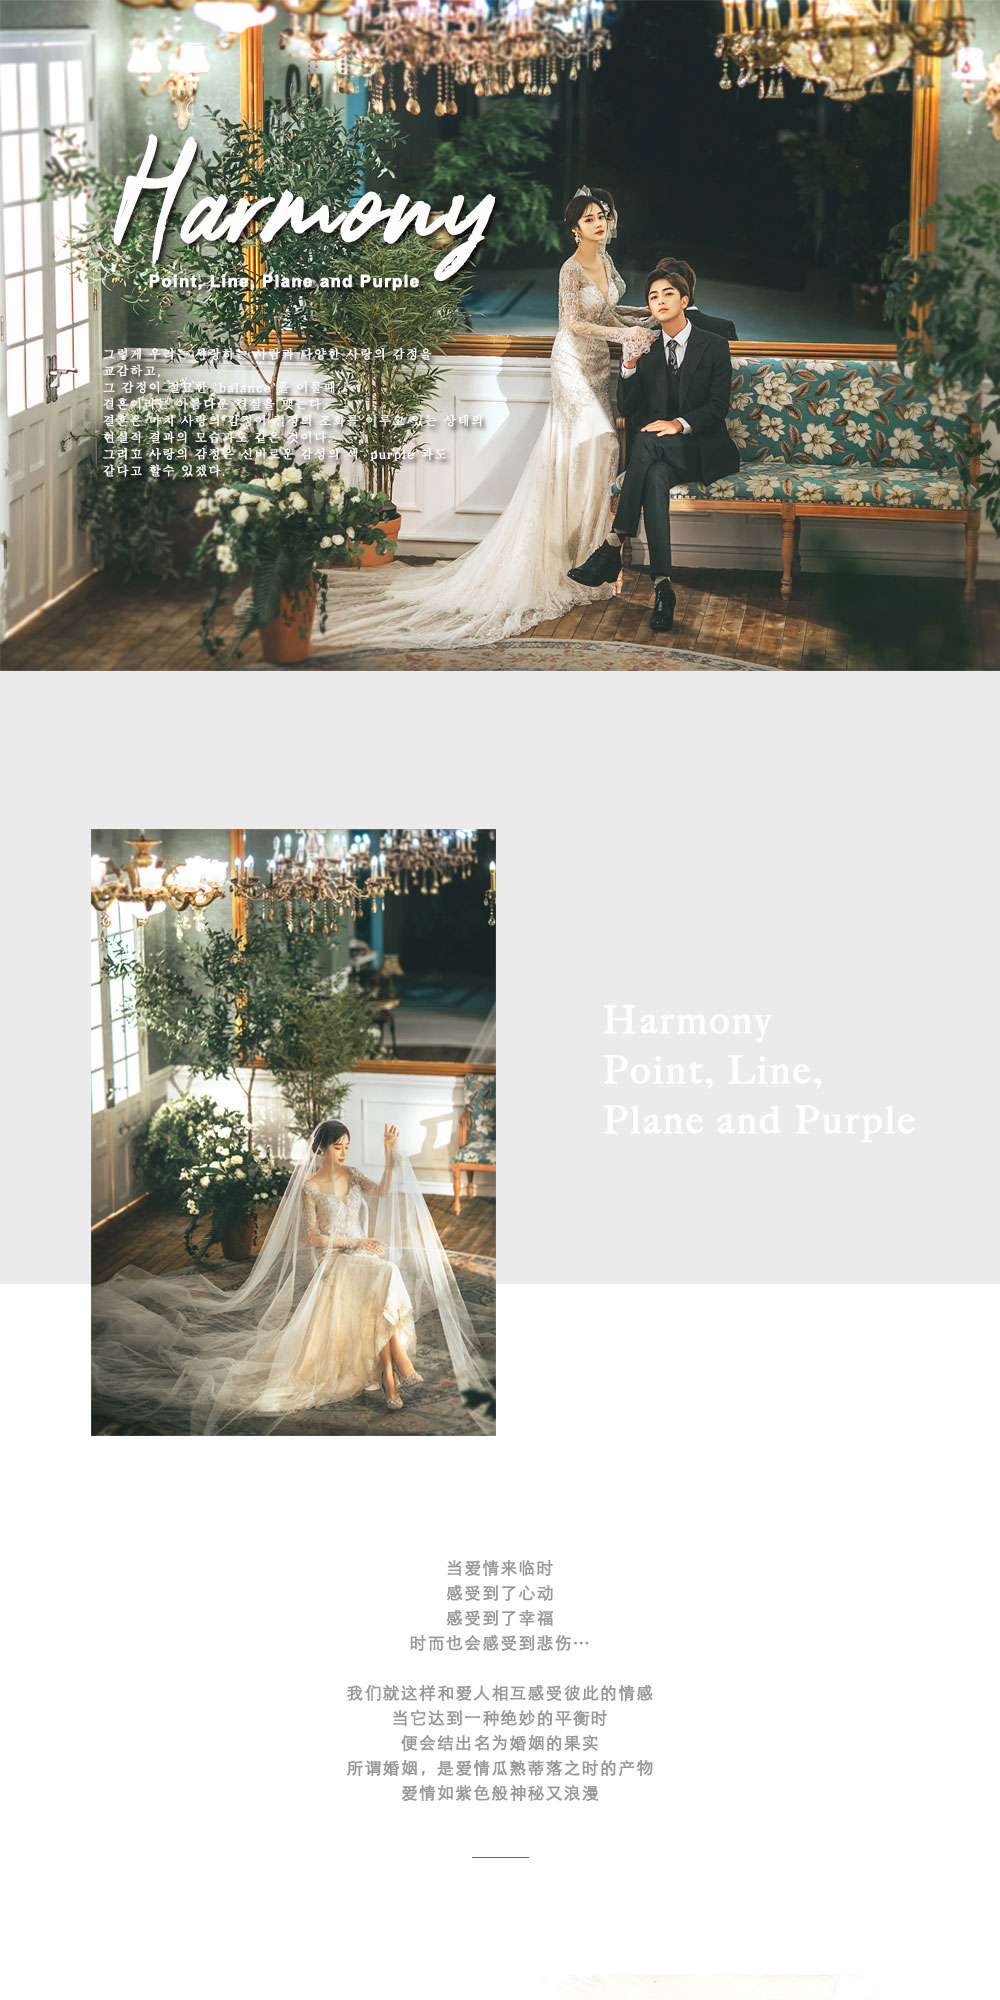 全新《HARMONY》婚纱摄影系列